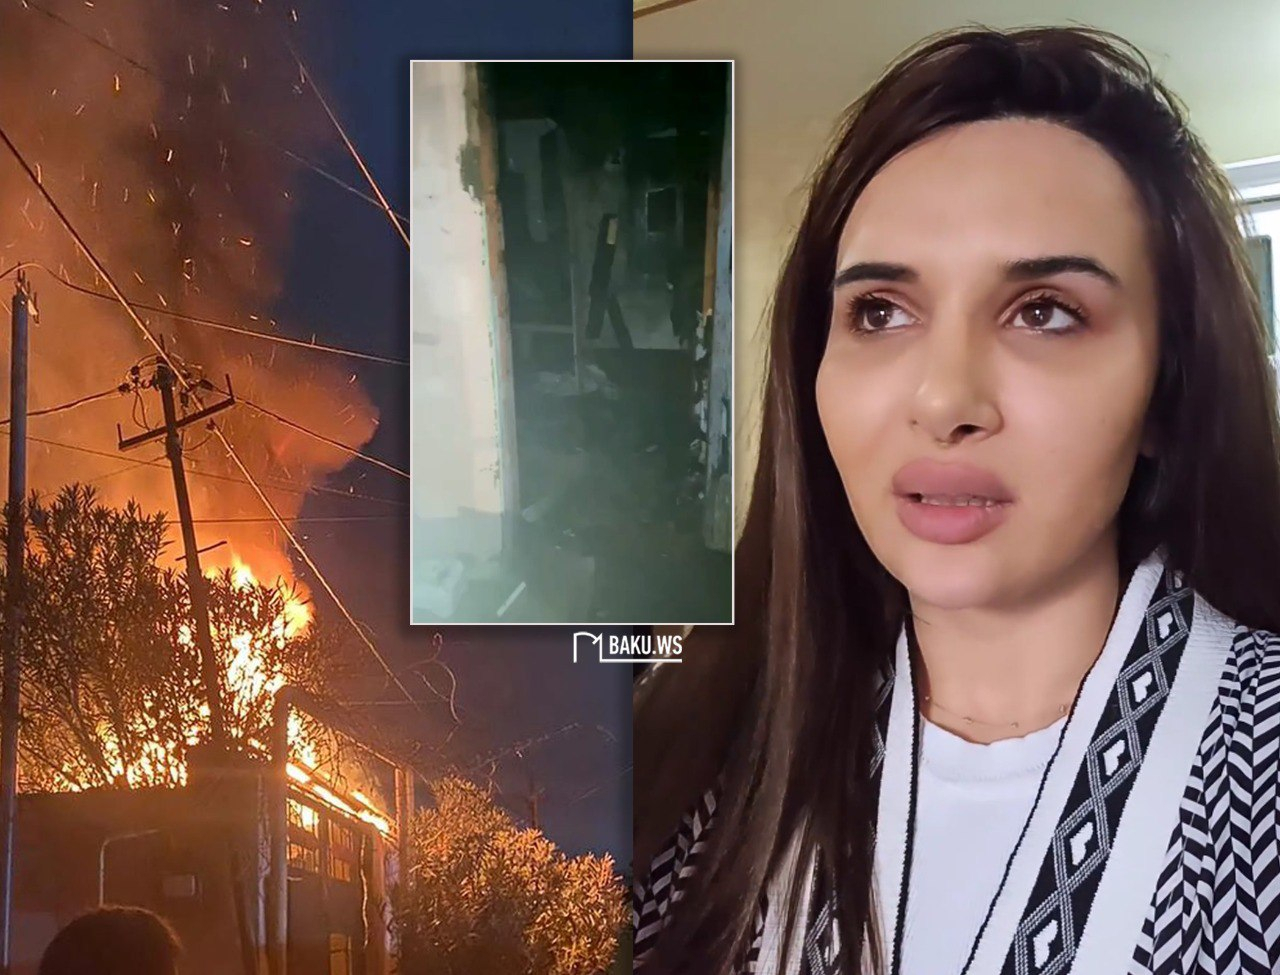 В Азербайджане сожгли дом ведущей? - ОФИЦИАЛЬНЫЙ ОТВЕТ + ВИДЕО